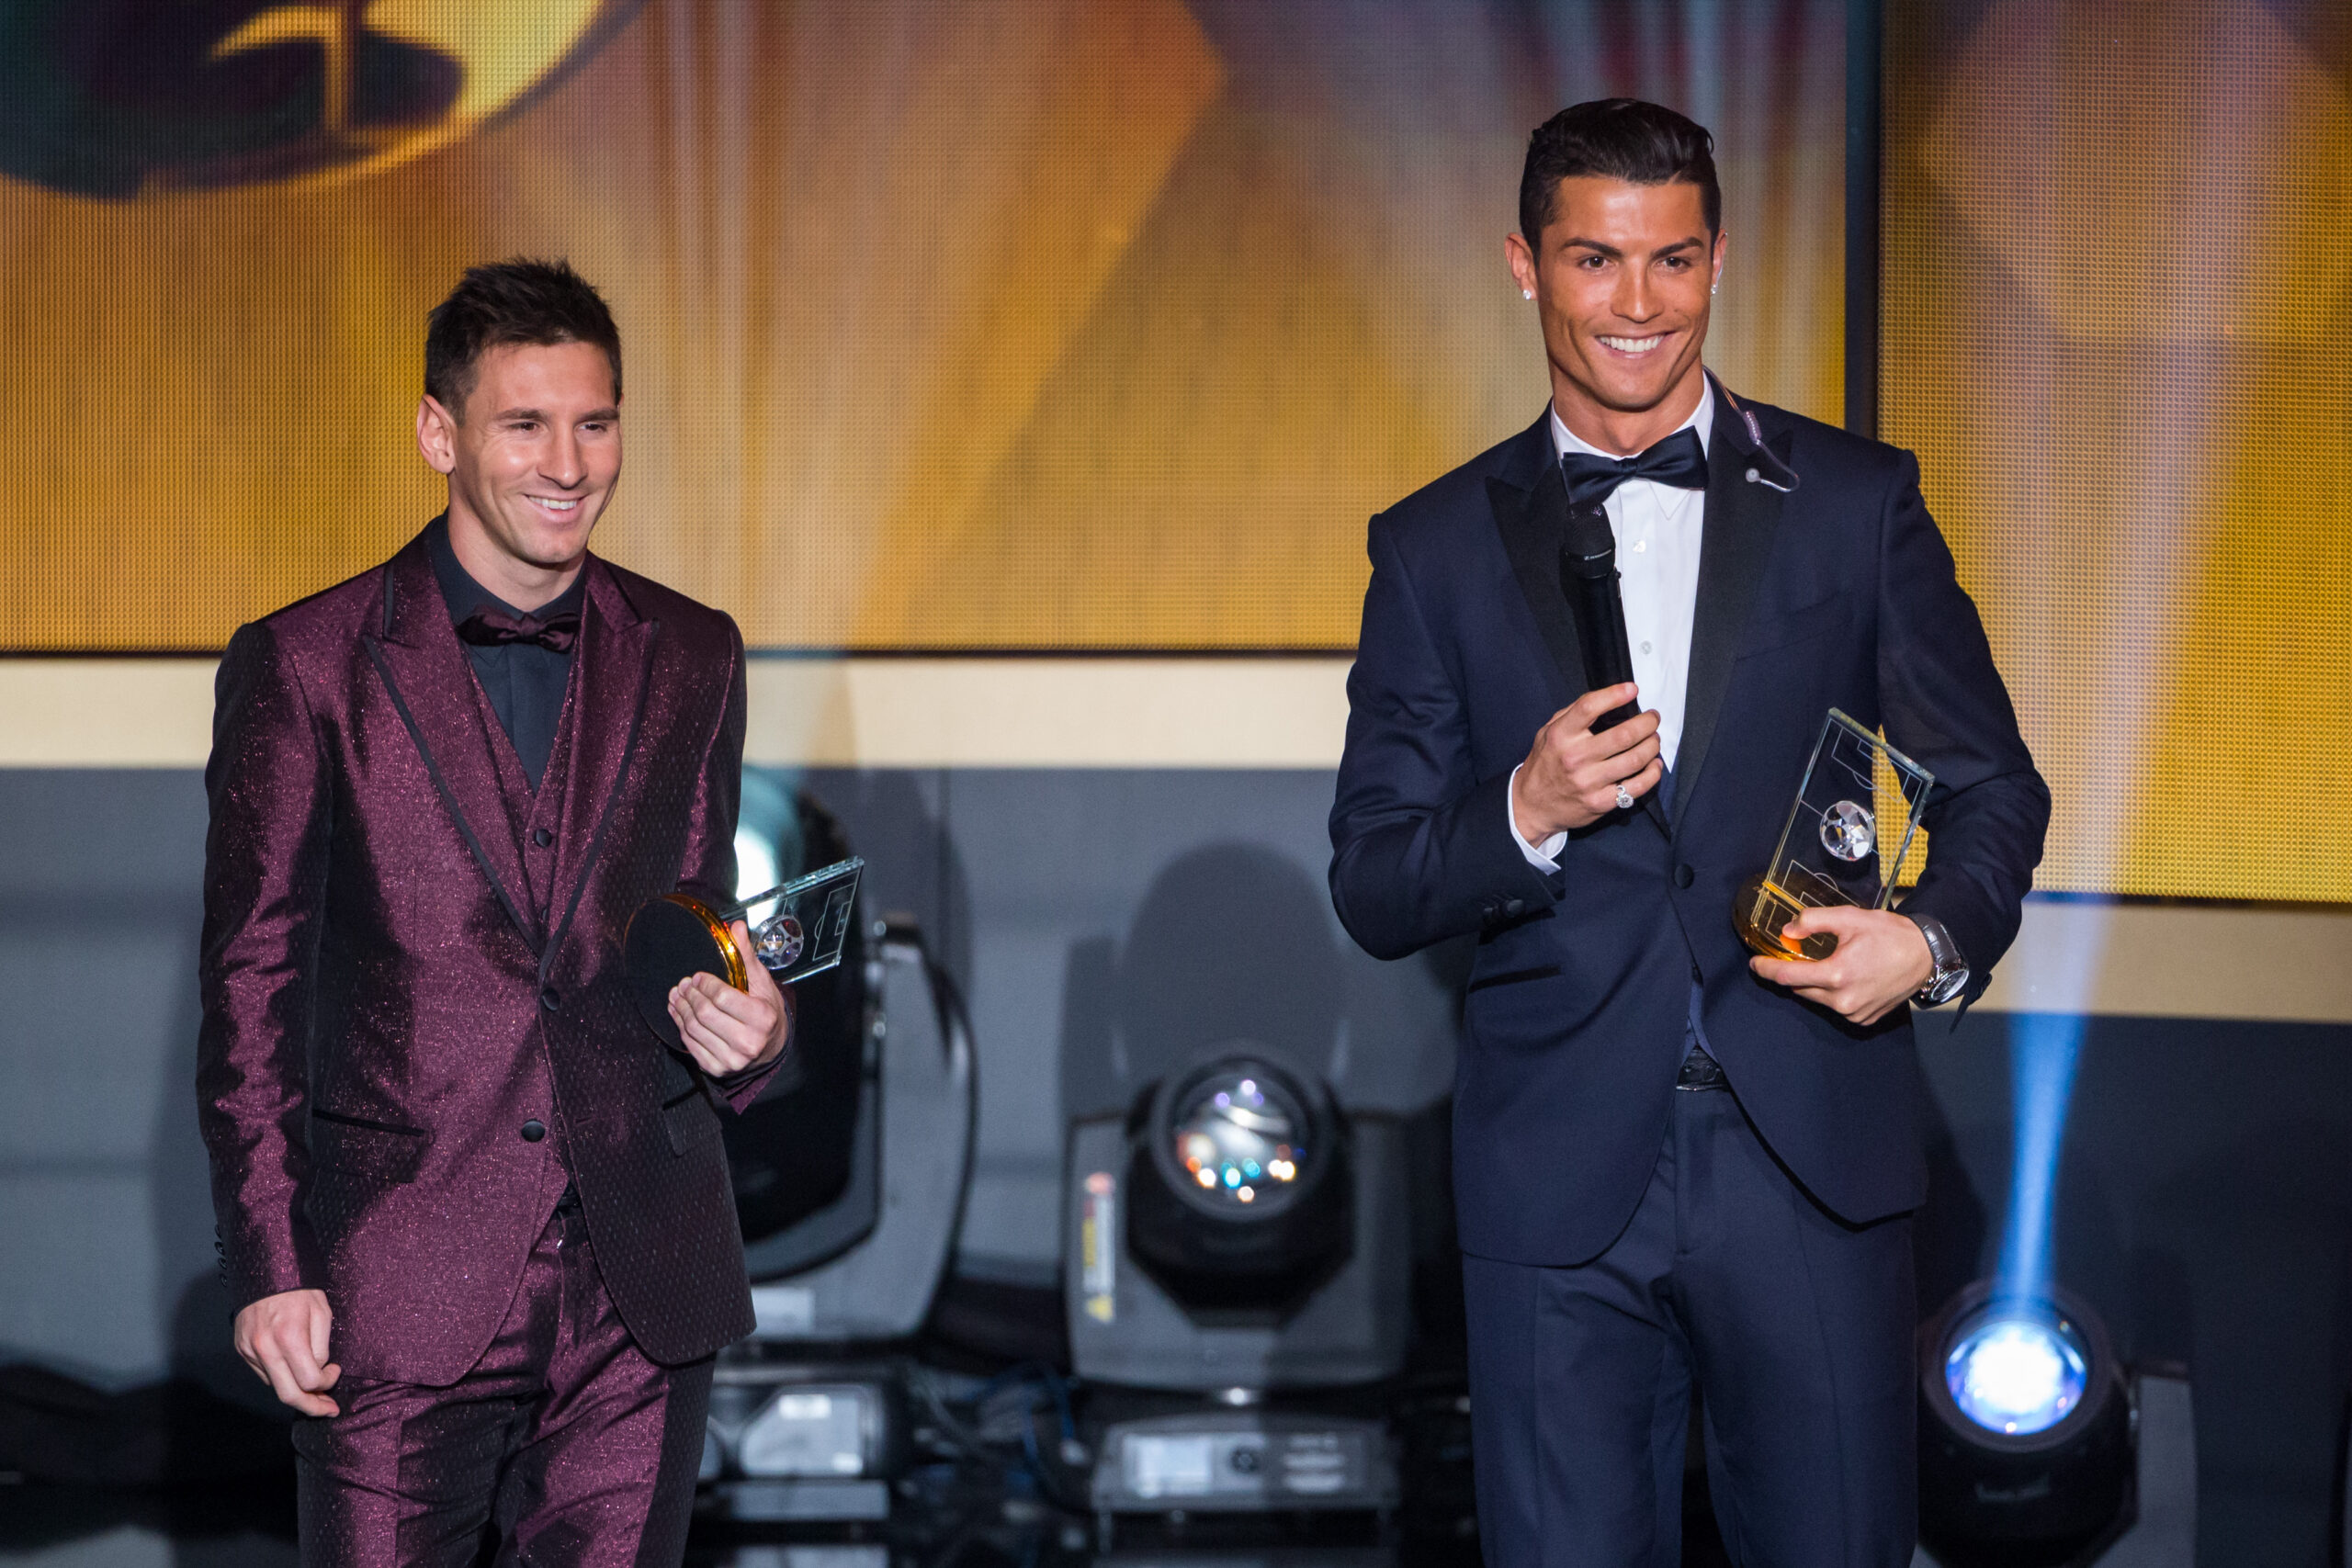 Ronaldo und Messi auf einer Bühne. Messi trägt einen bordeauxfarbenen und Ronaldo einen dunkelblauen Anzug